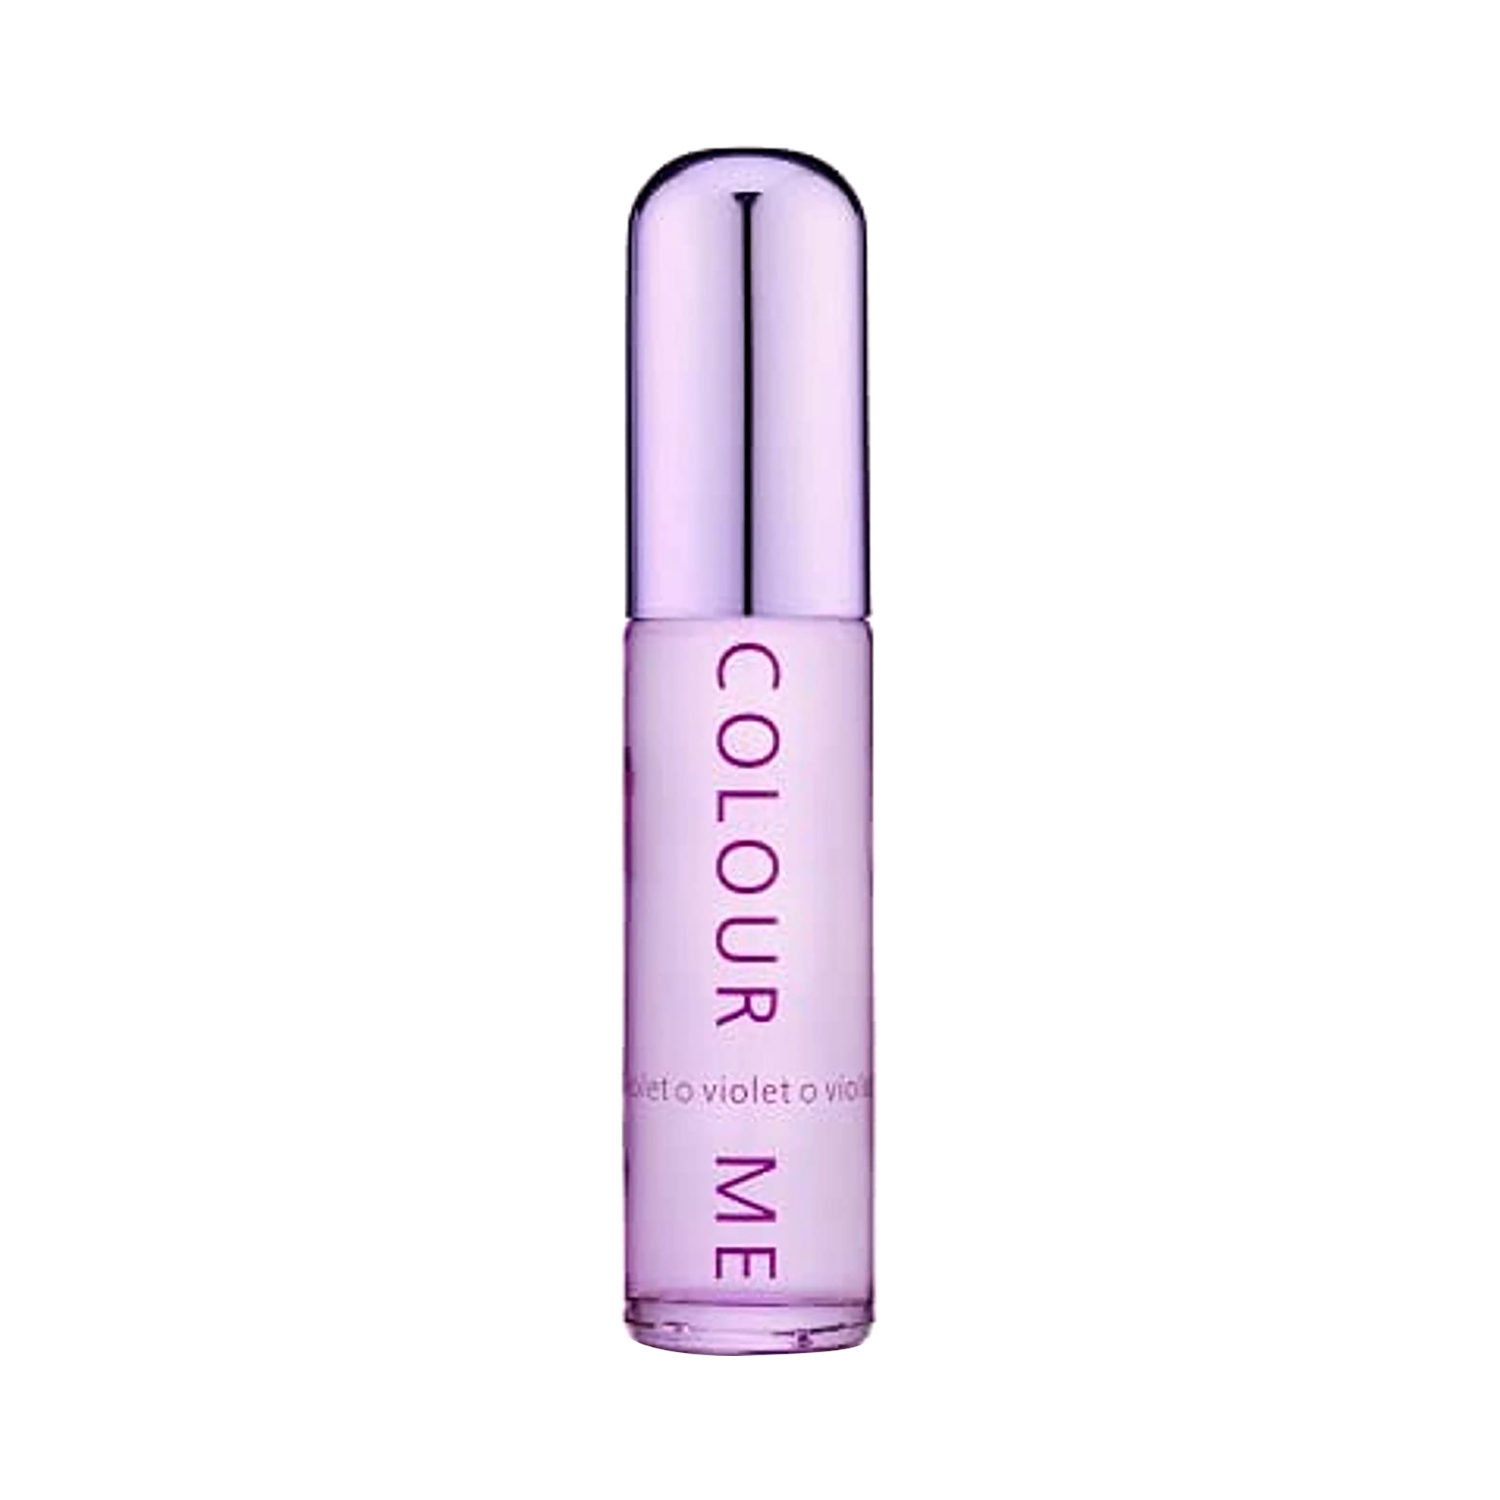 Colour Me Femme Violet Eau De Parfum (50ml)